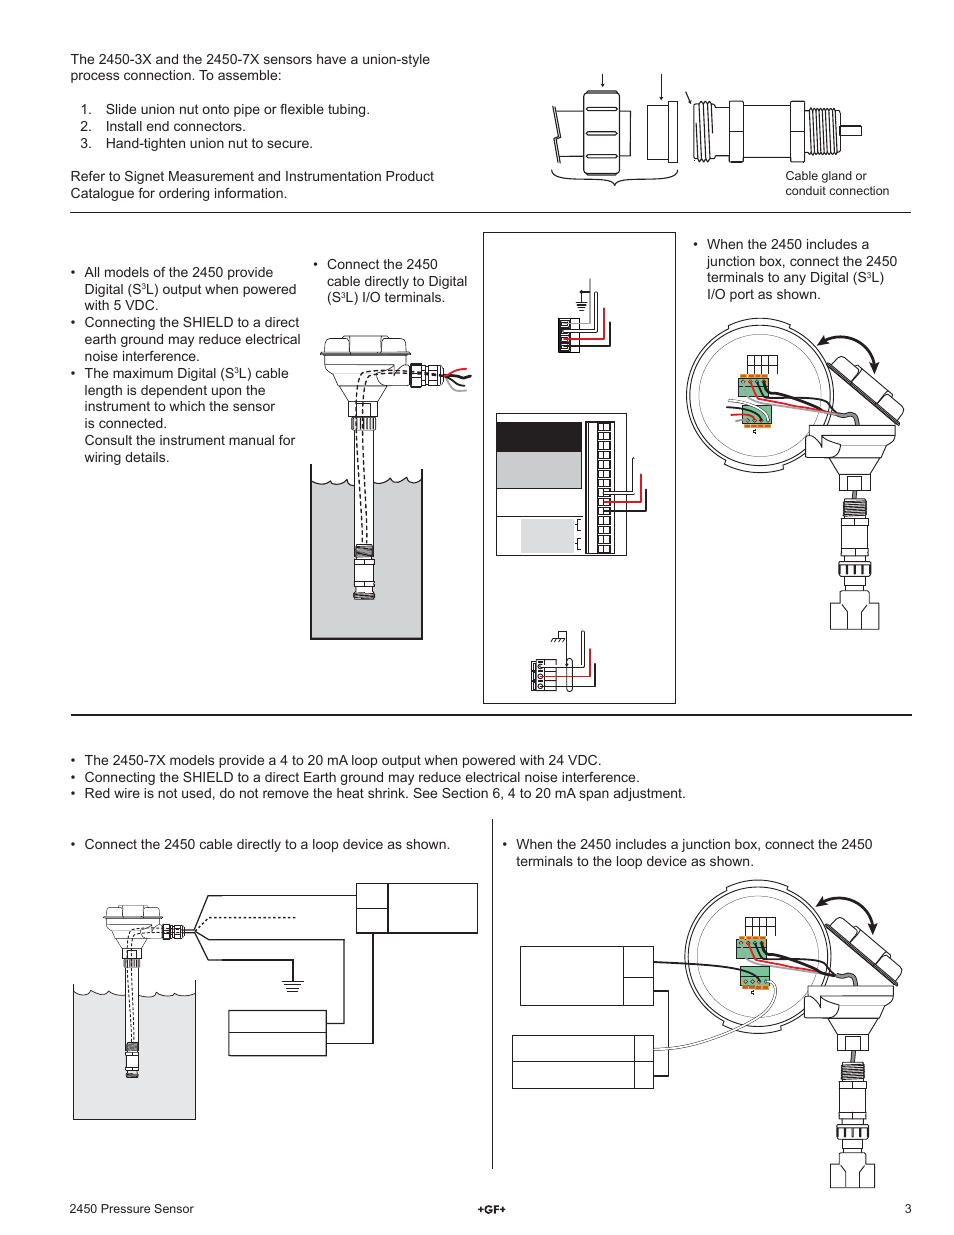 Digital (s, L) wiring, 4 to 20 ma loop wiring | GF Signet 2450 Pressure